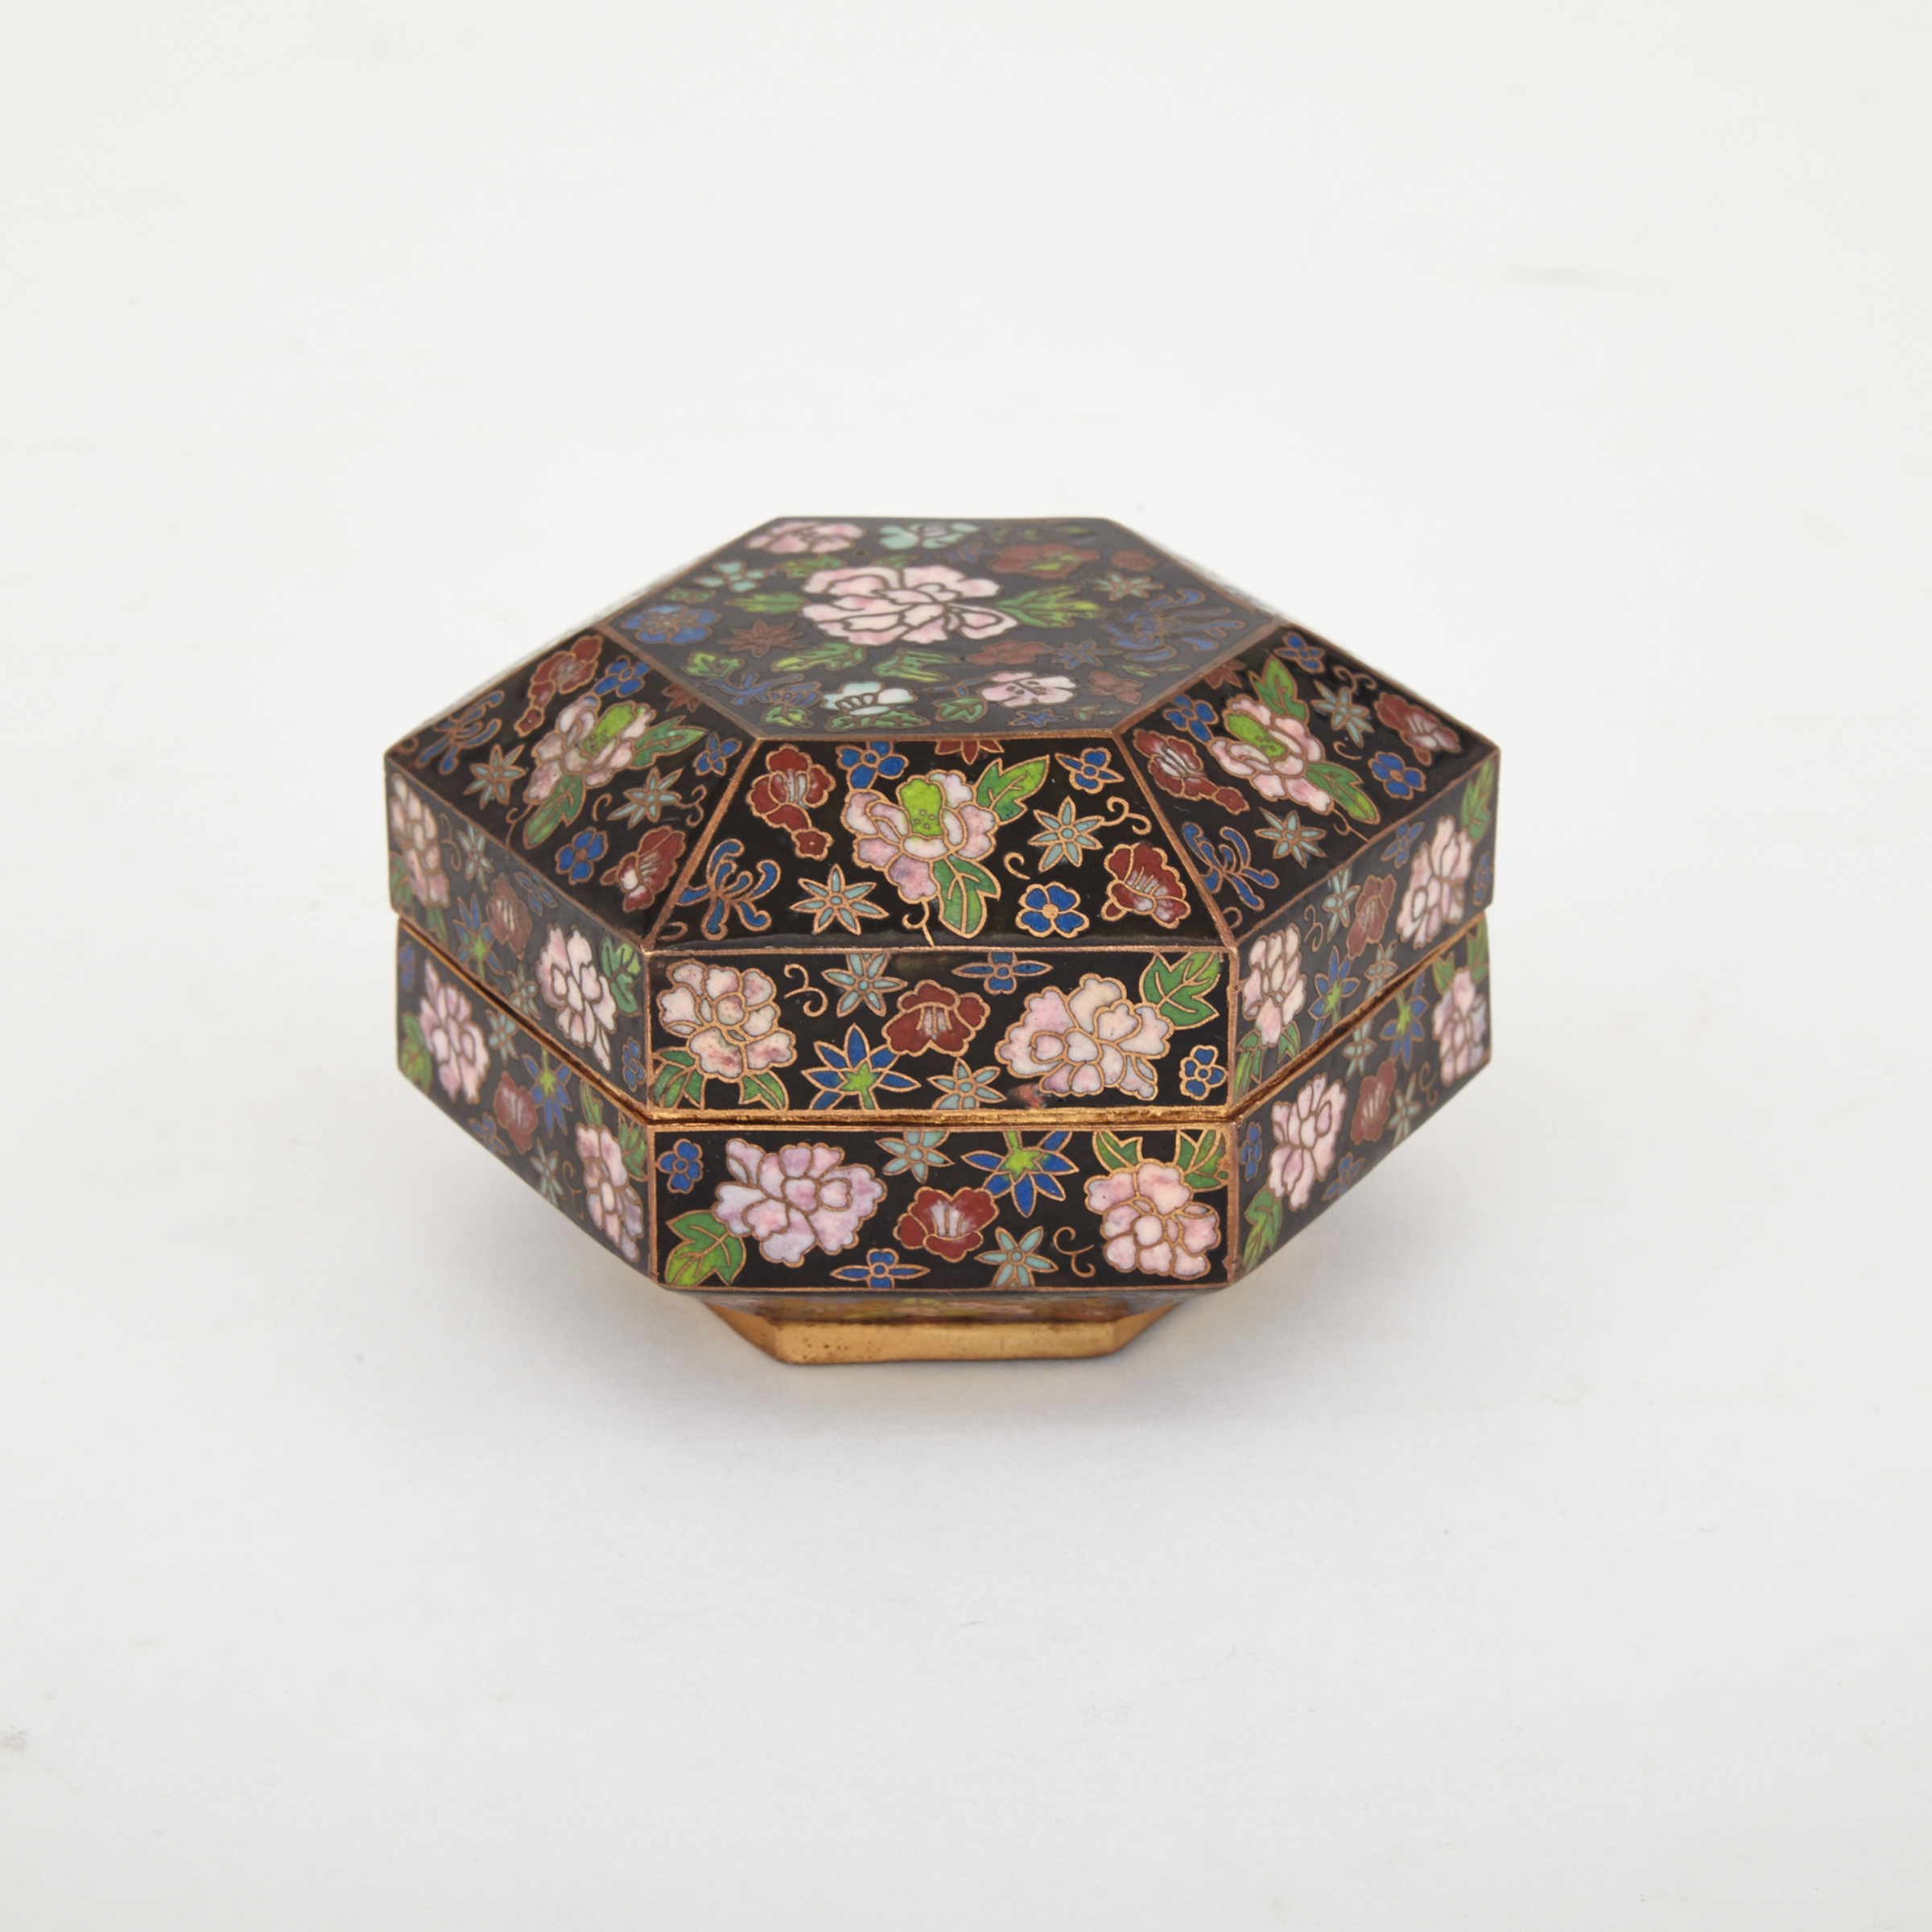 A Hexagonal Cloisonne Box, 19th Century